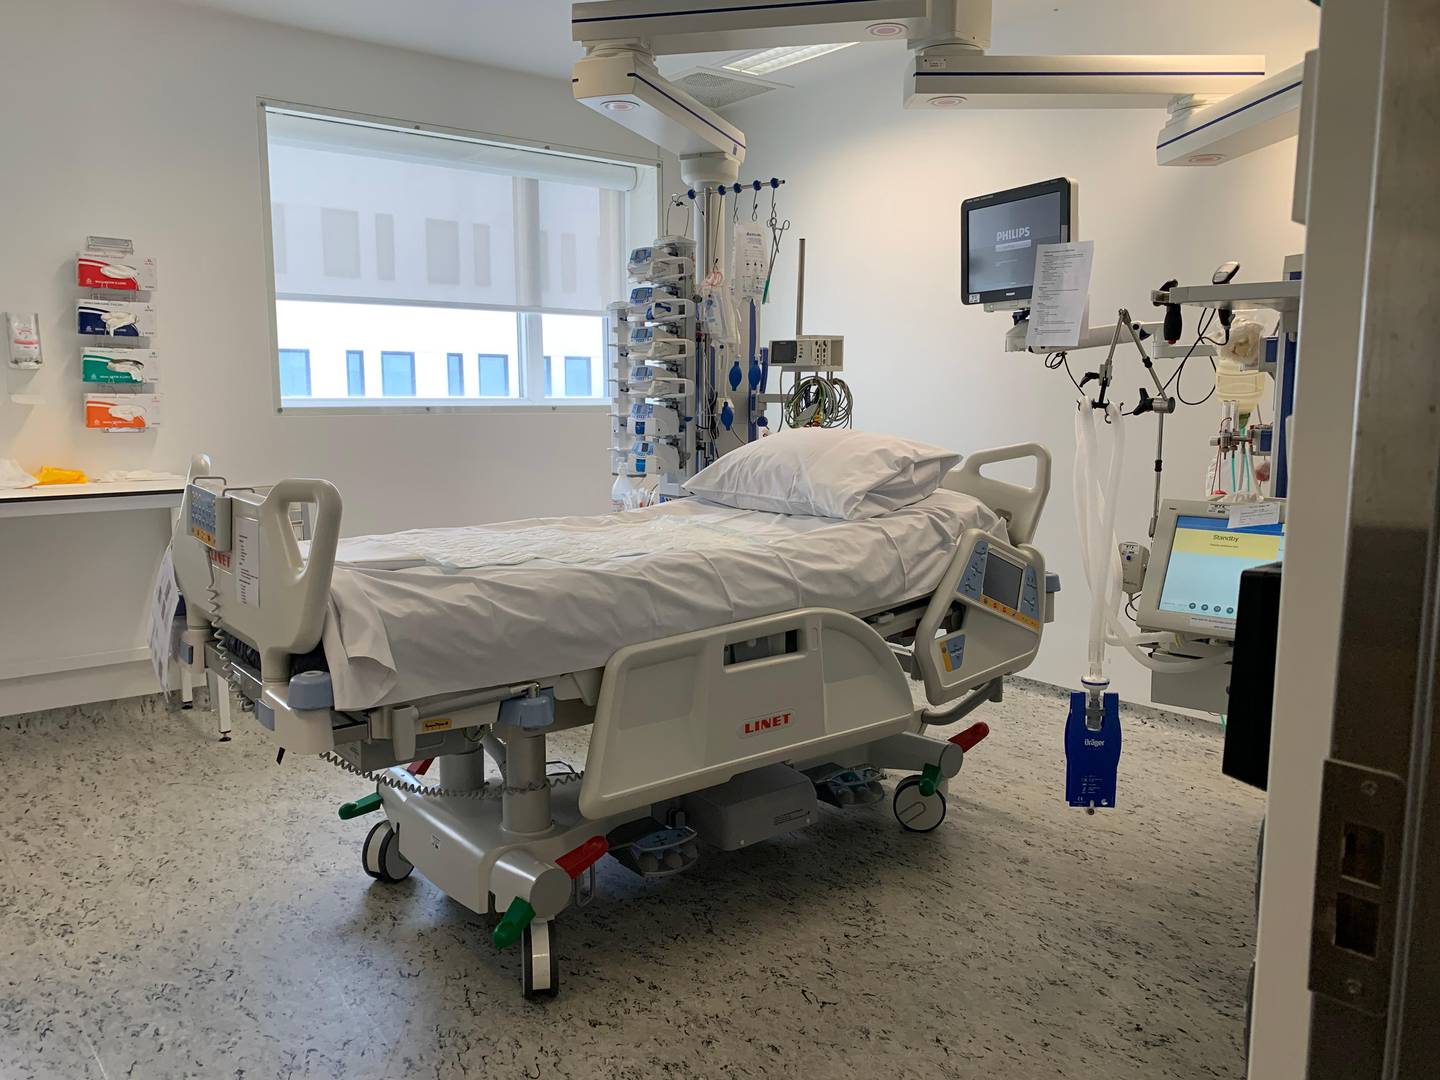 Sykehuset Østfold gjør seg klare for å ta imot og behandle opptil 75 intensivpasienter med koronavirus samtidig. Til vanlig har sykehuset bare åtte intensivplasser.